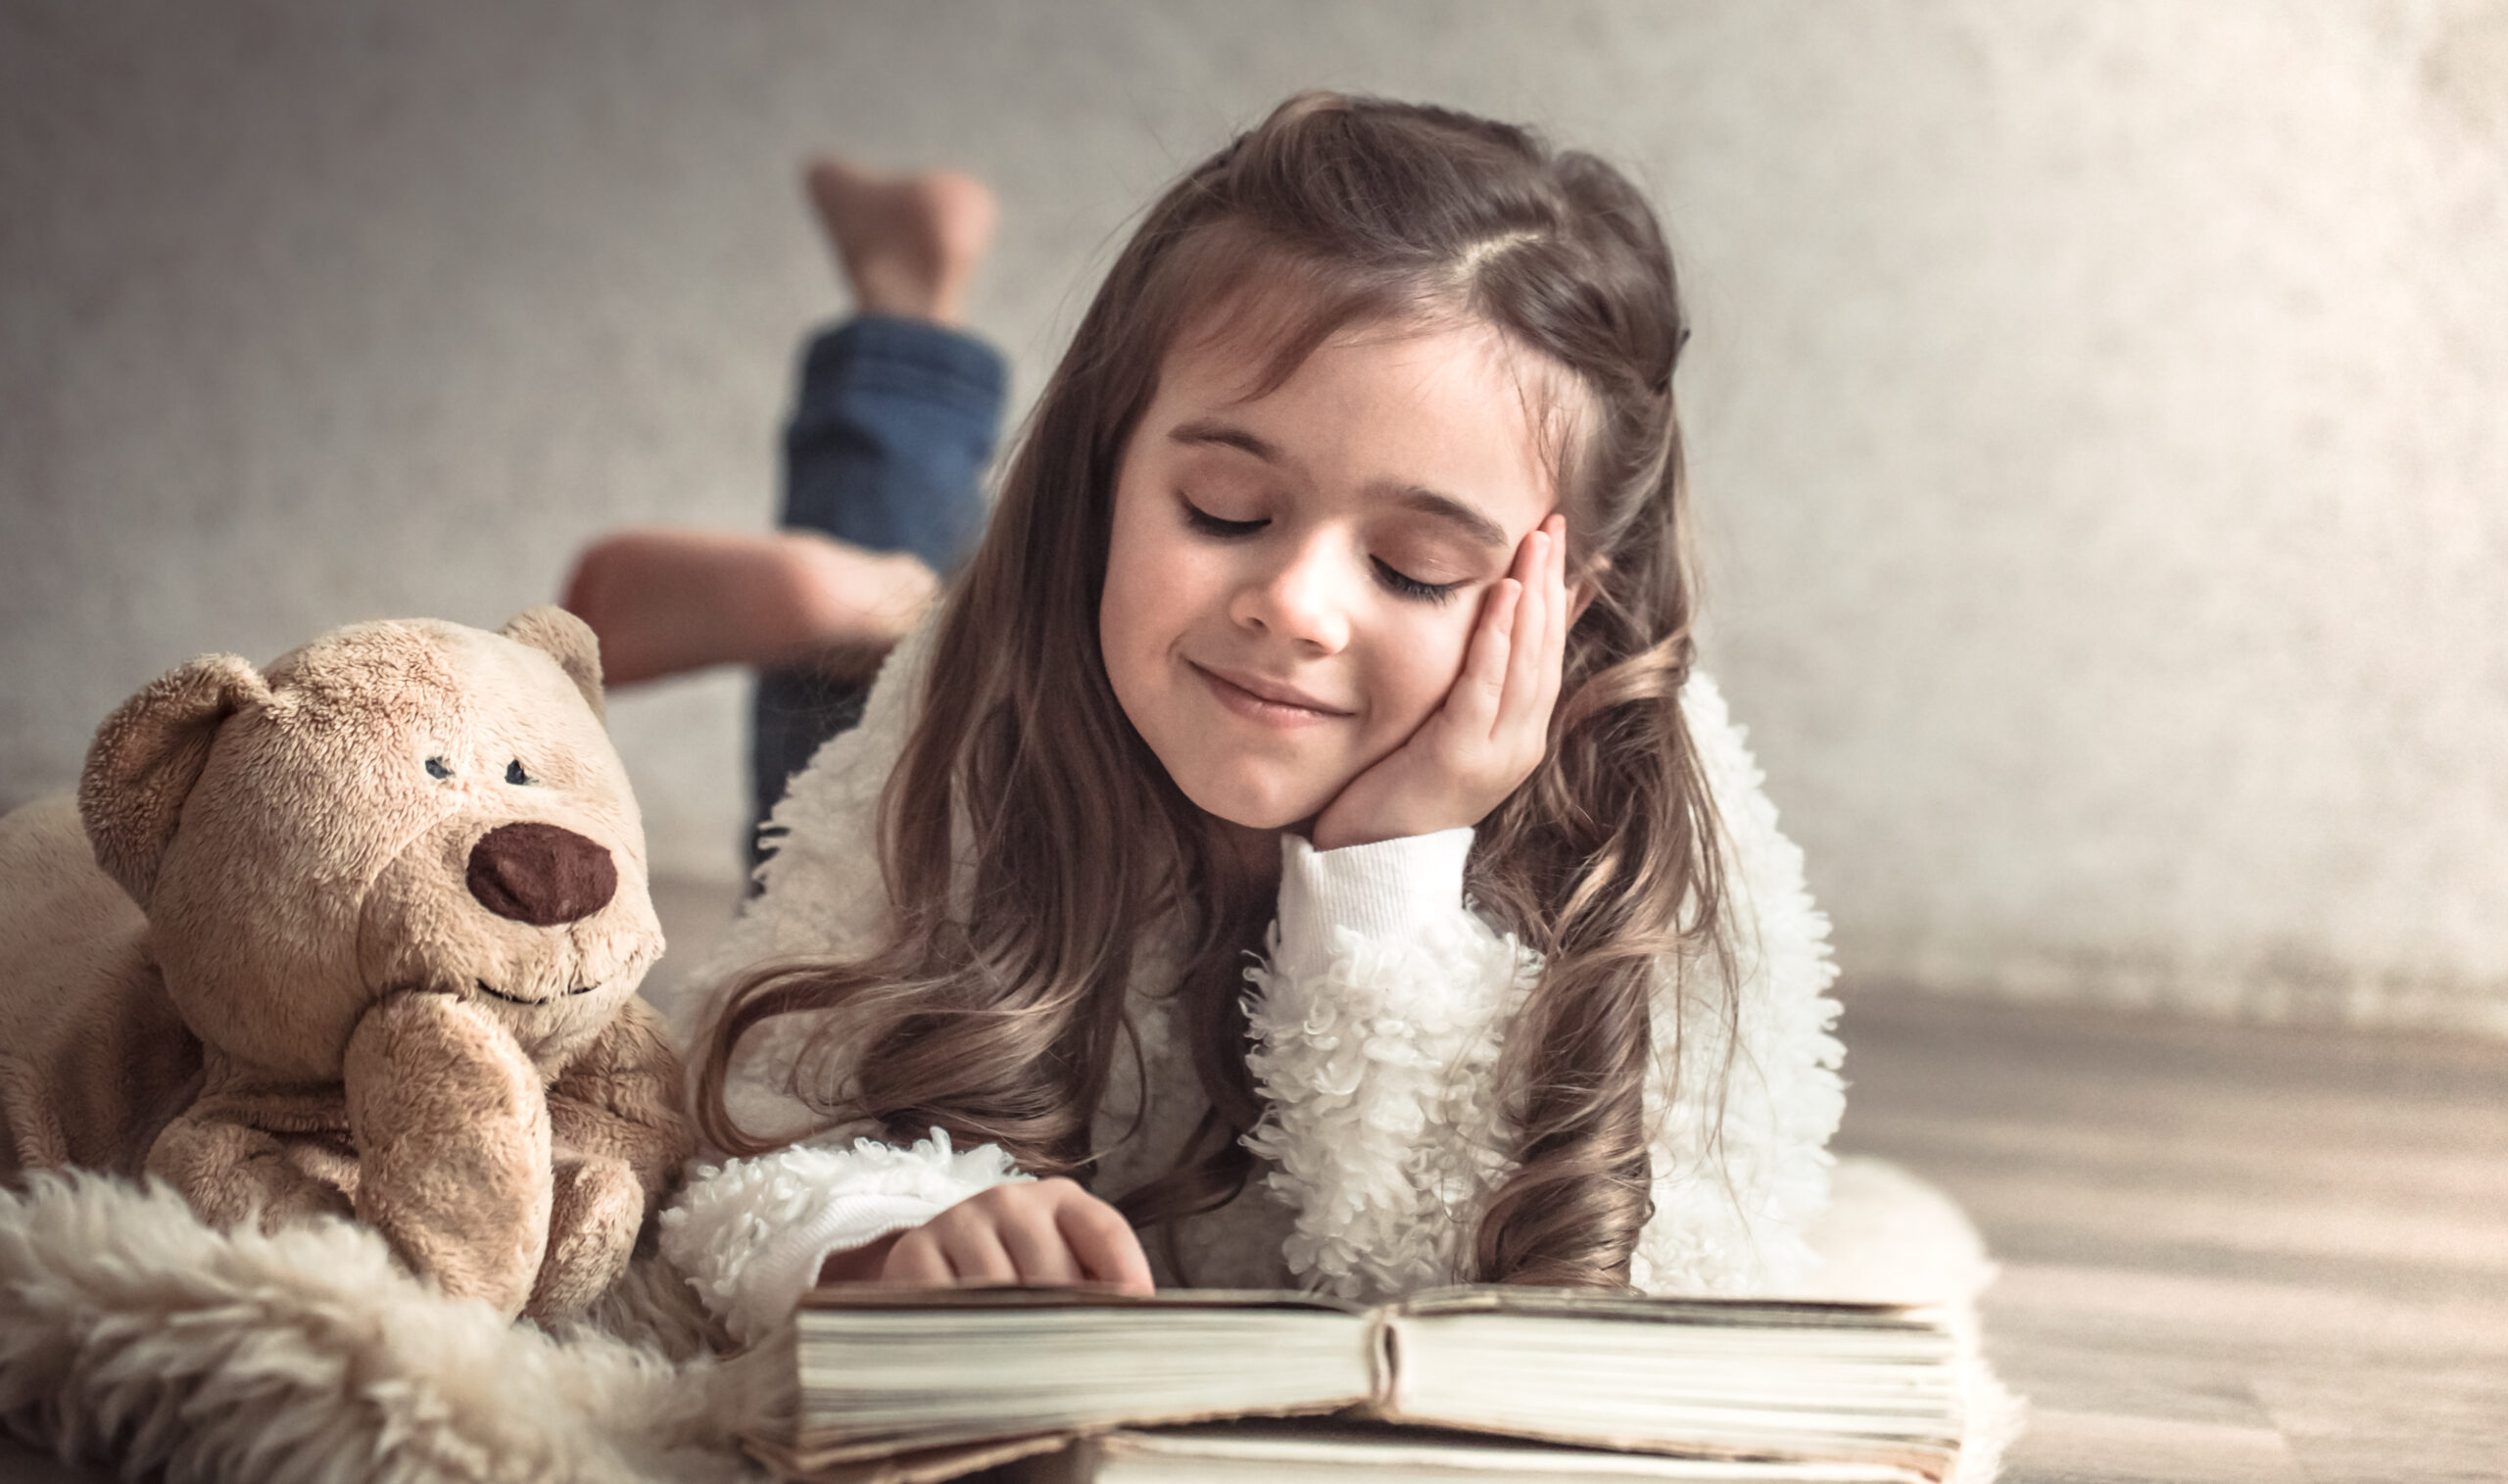 Ein kleines Mädchen liest mit ihrem Teddy in einem Buch – ein Bild für Freundschaft, Glück und Entspannung.